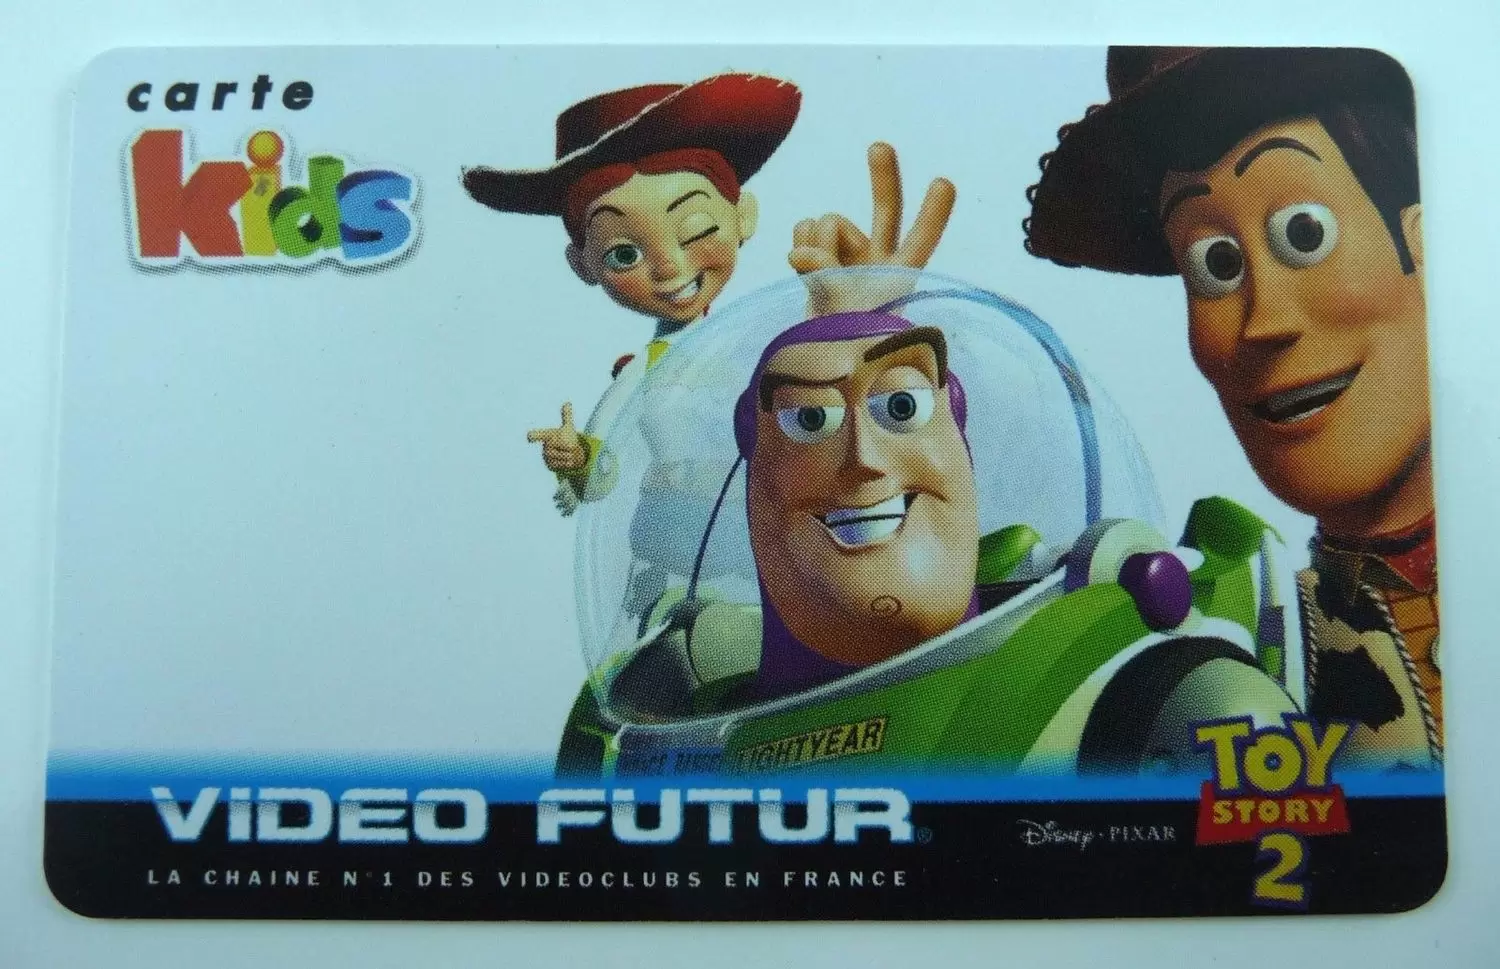 Cartes Vidéo Futur - Carte Kids Toy story 2